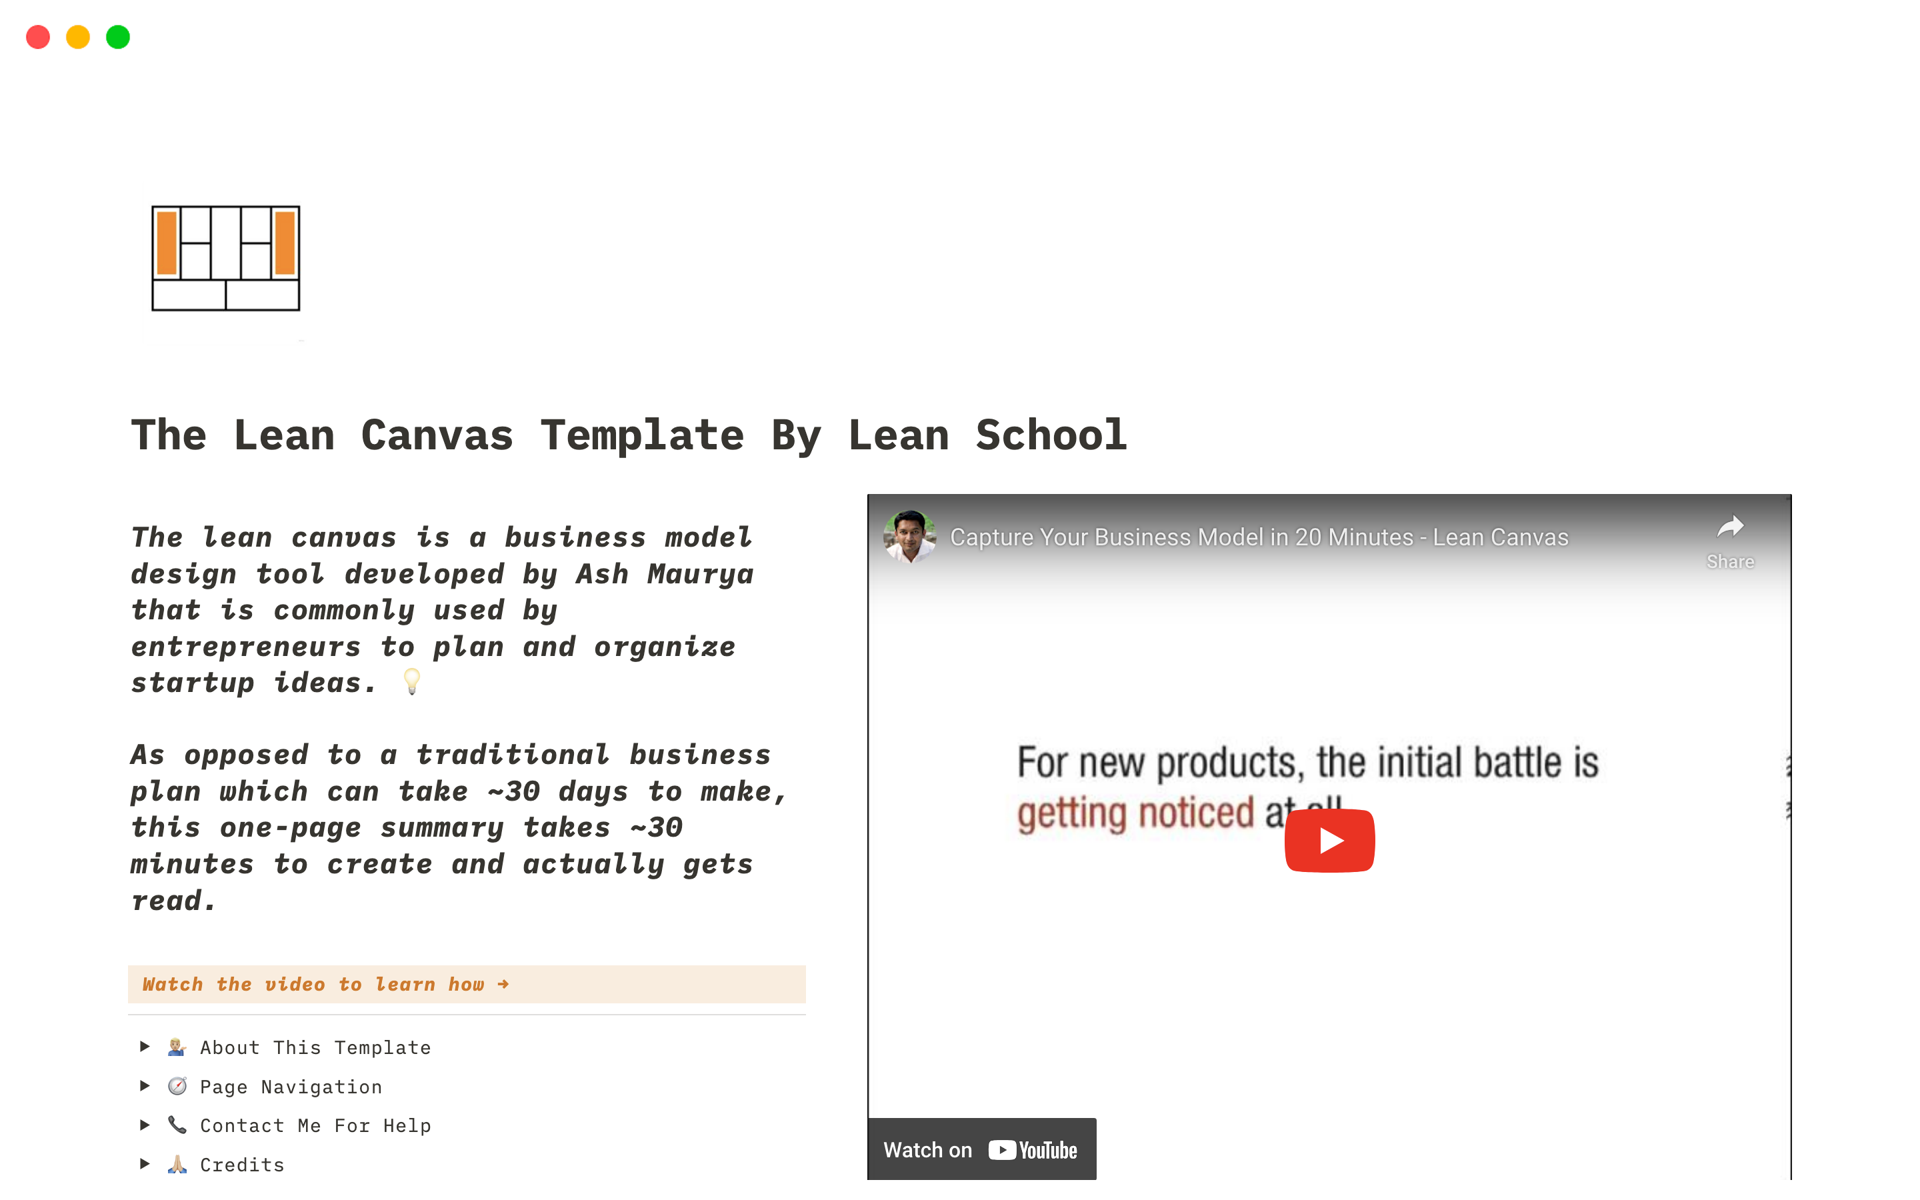 En förhandsgranskning av mallen för The Lean Canvas Template By Lean School